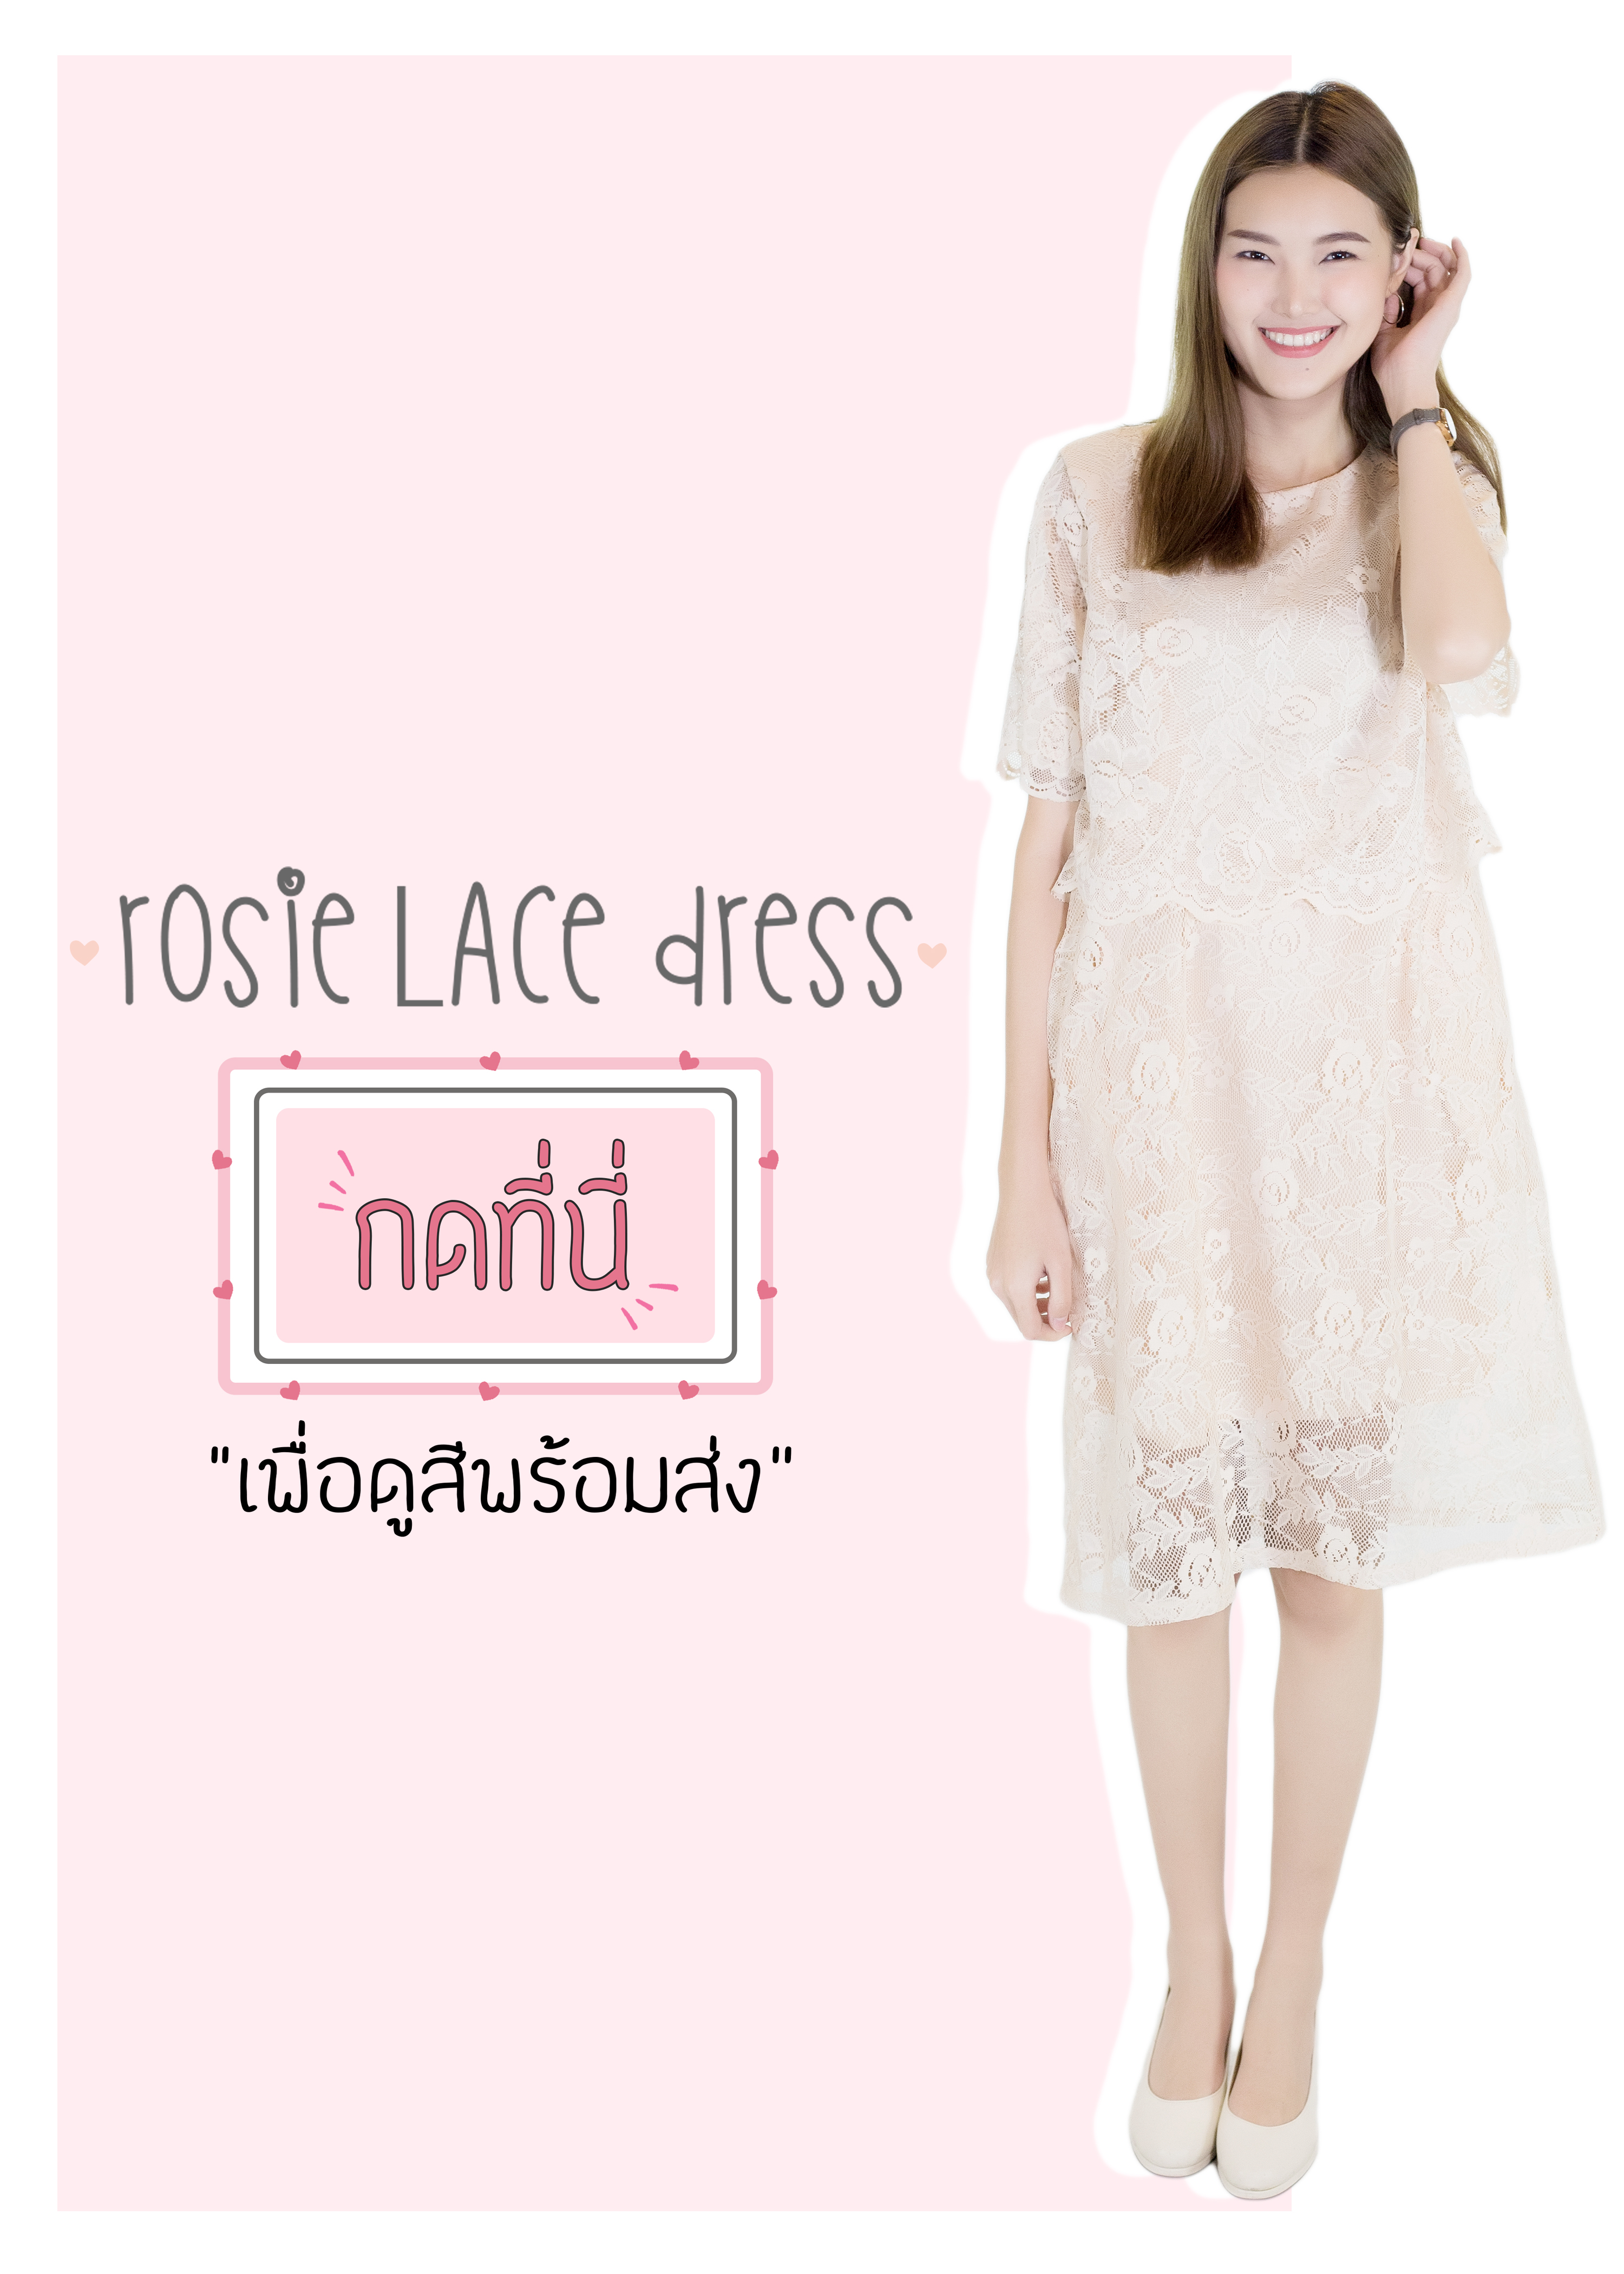 DZ23 Rosie lace dress